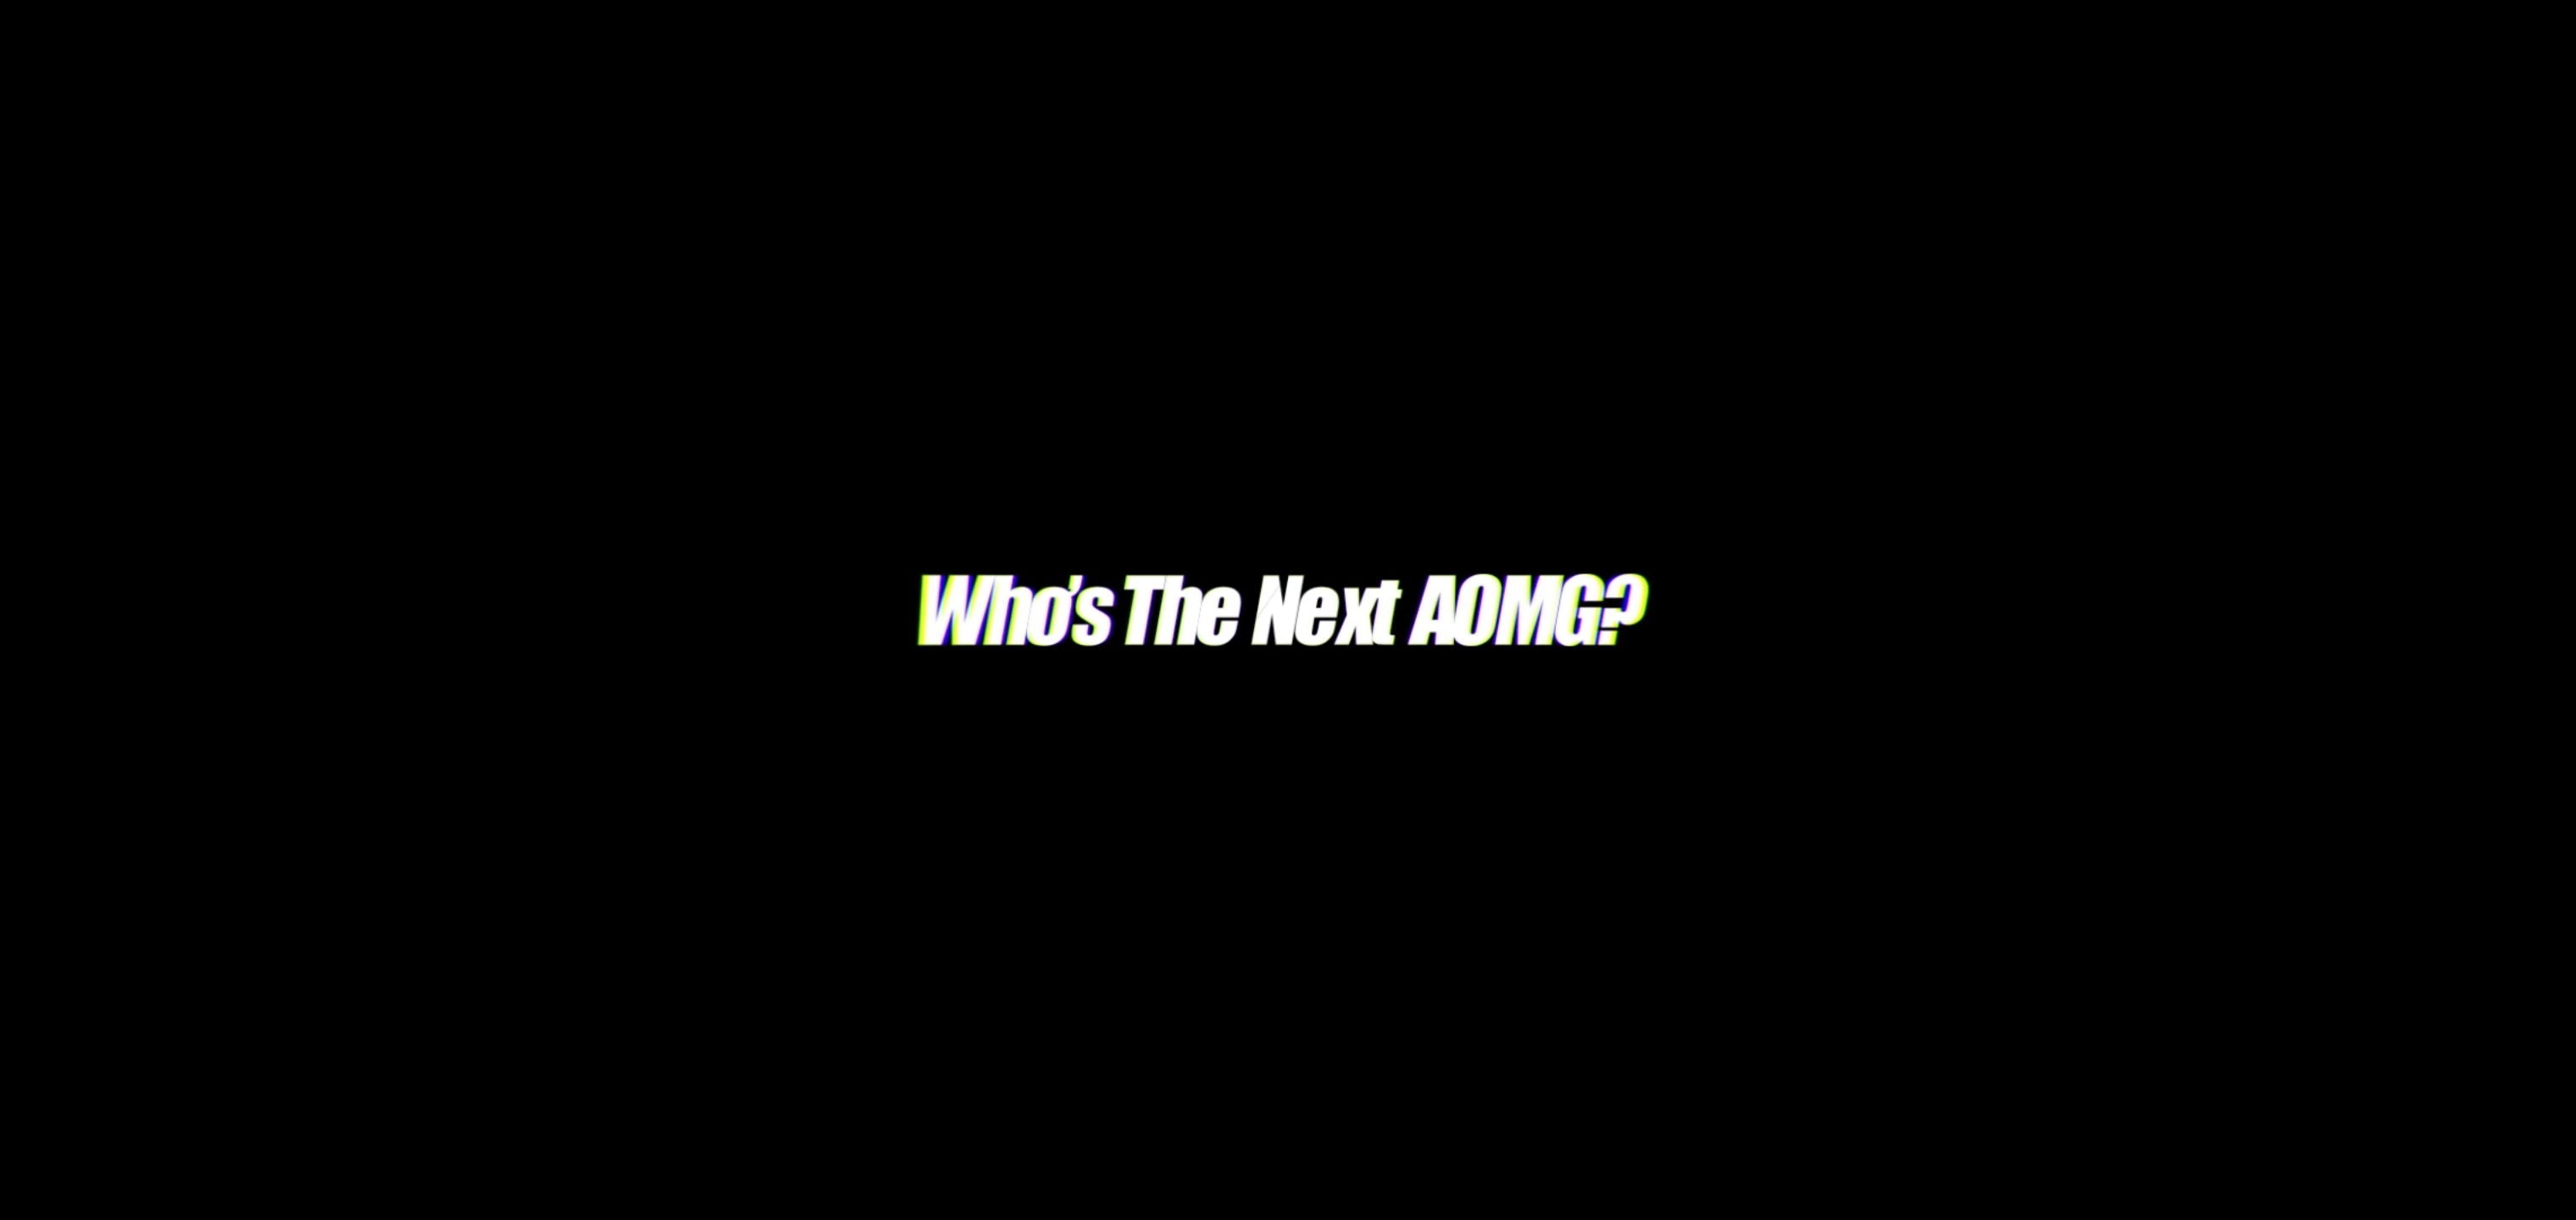 오늘 올라온 AOMG 새 멤버 티저 | 인스티즈